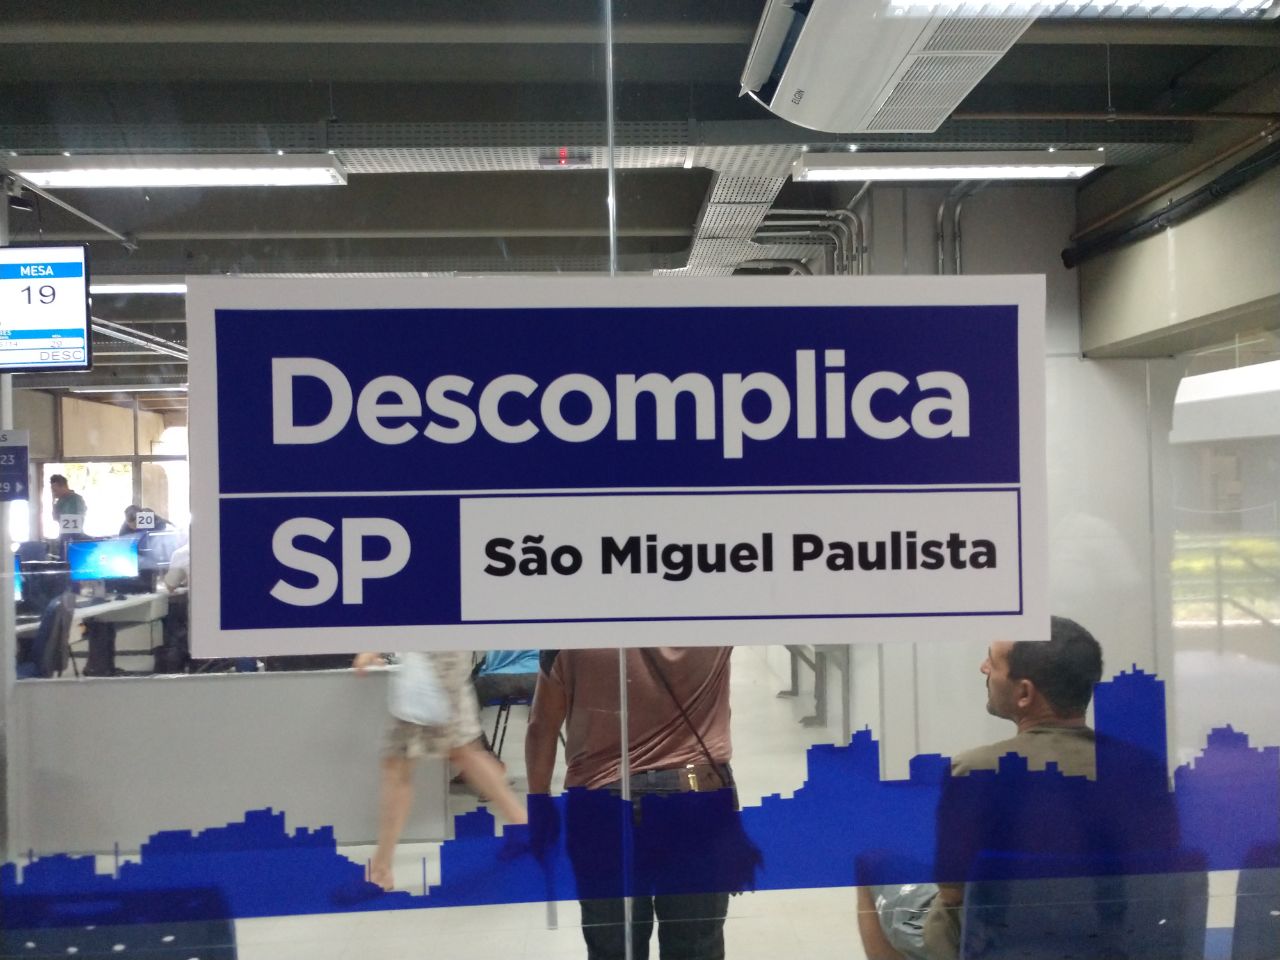 A imagem, é a placa do Descomplica SP São Miguel Paulista no vidro do estabelecimento.